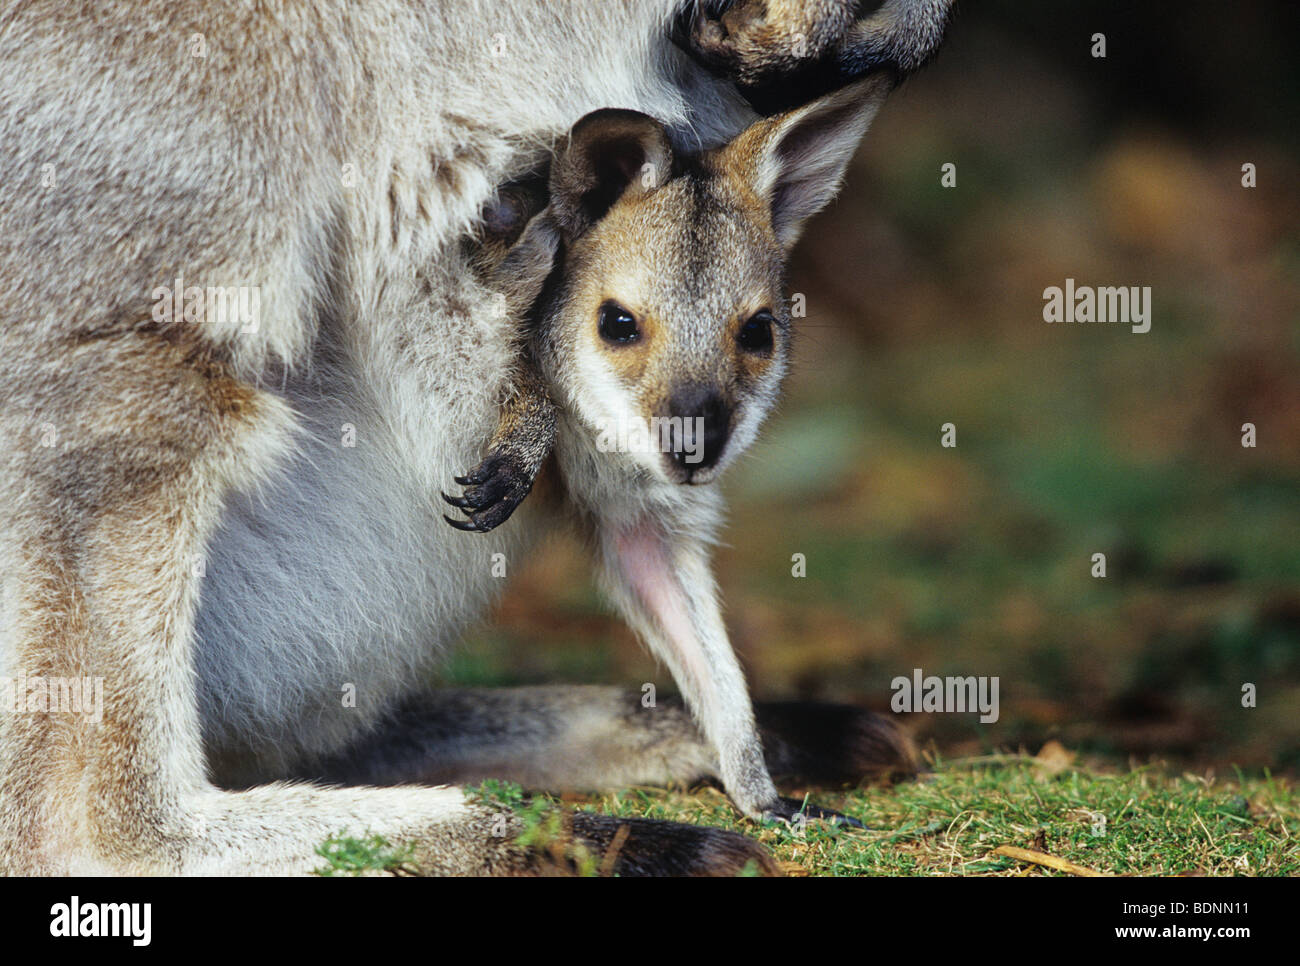 Joey Kangaroo with mother, close-up Stock Photo